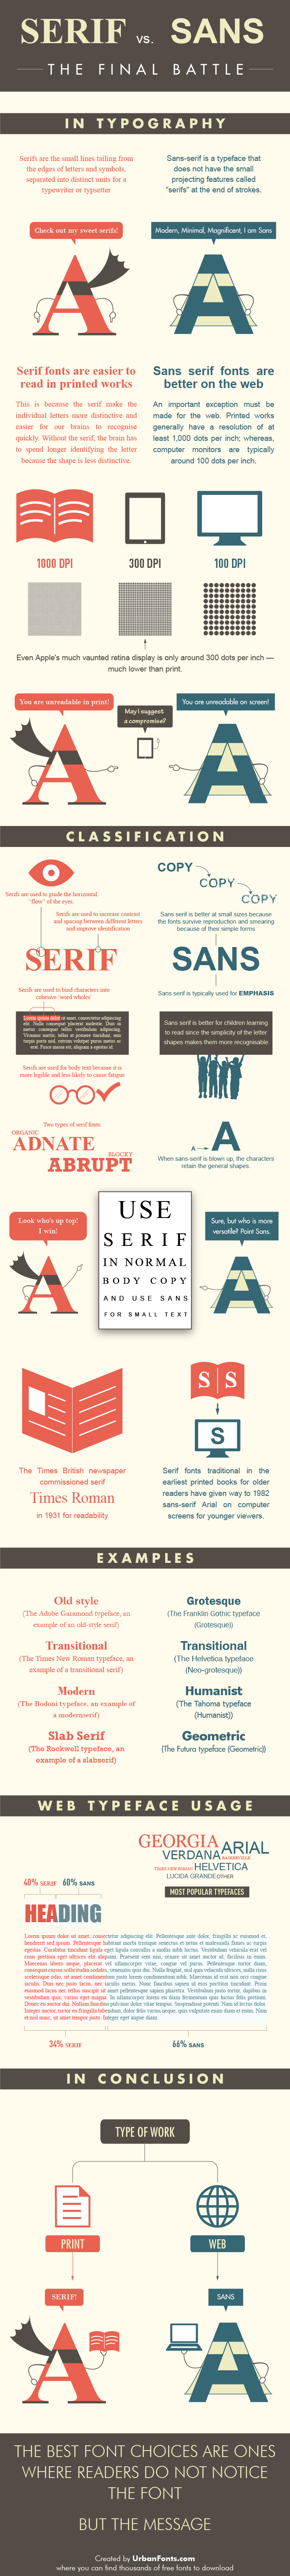 Serif vs Sans Serif Font